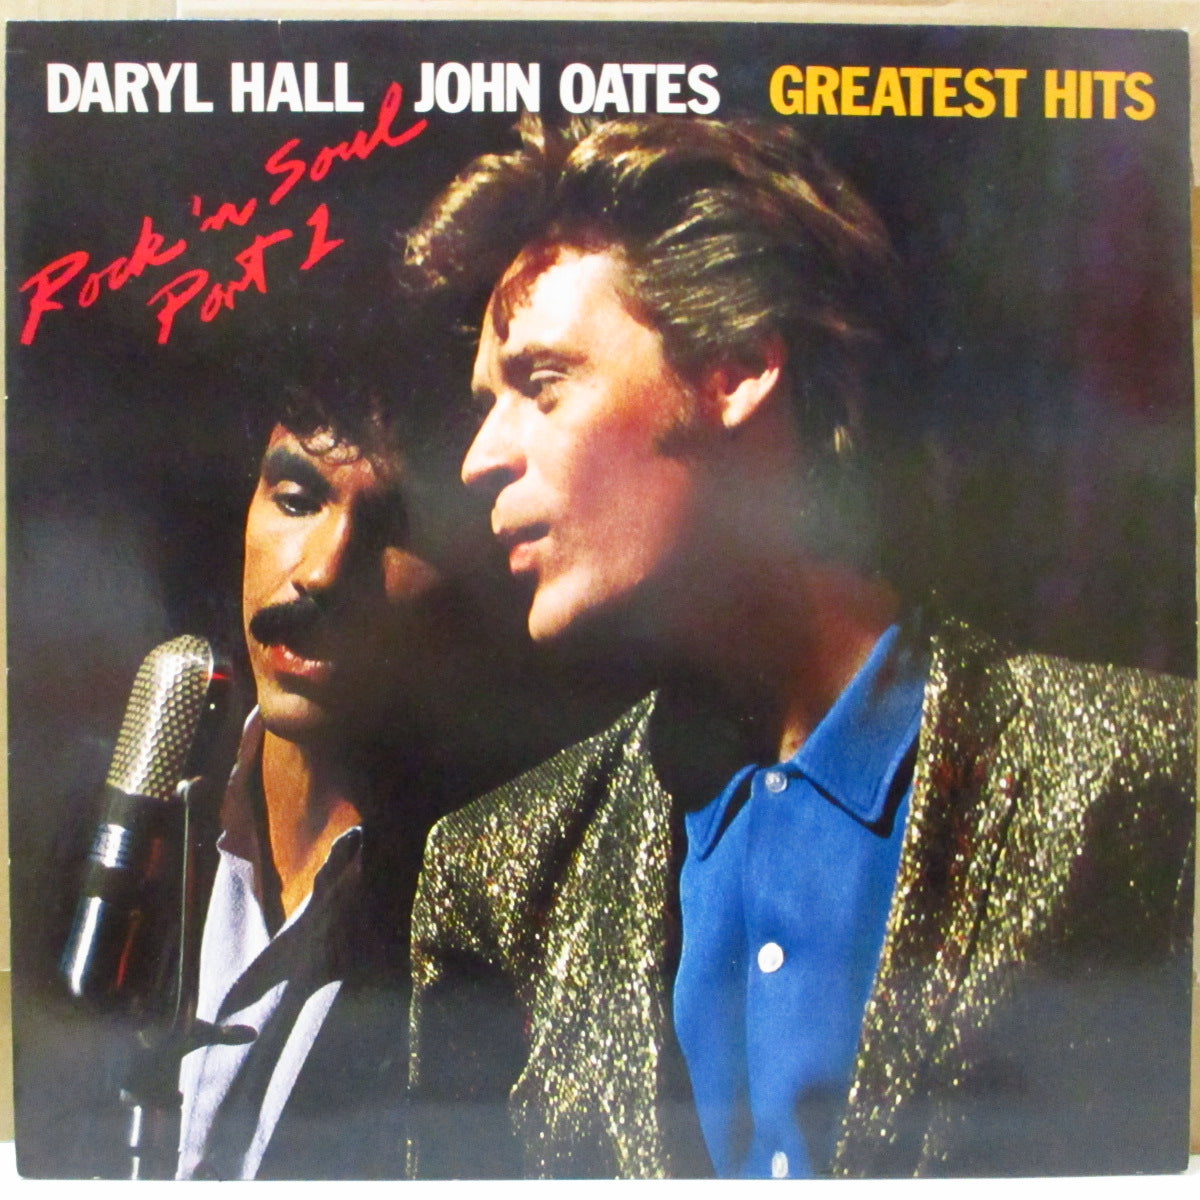 DARYL HALL u0026 JOHN OATES (ダリル・ホールu0026ジョン・オーツ) - Greatest Hits - Rock 'N Soul  Part 1 (EU '84 再発 LP+インナー/メンバー写真光沢ジャケ)